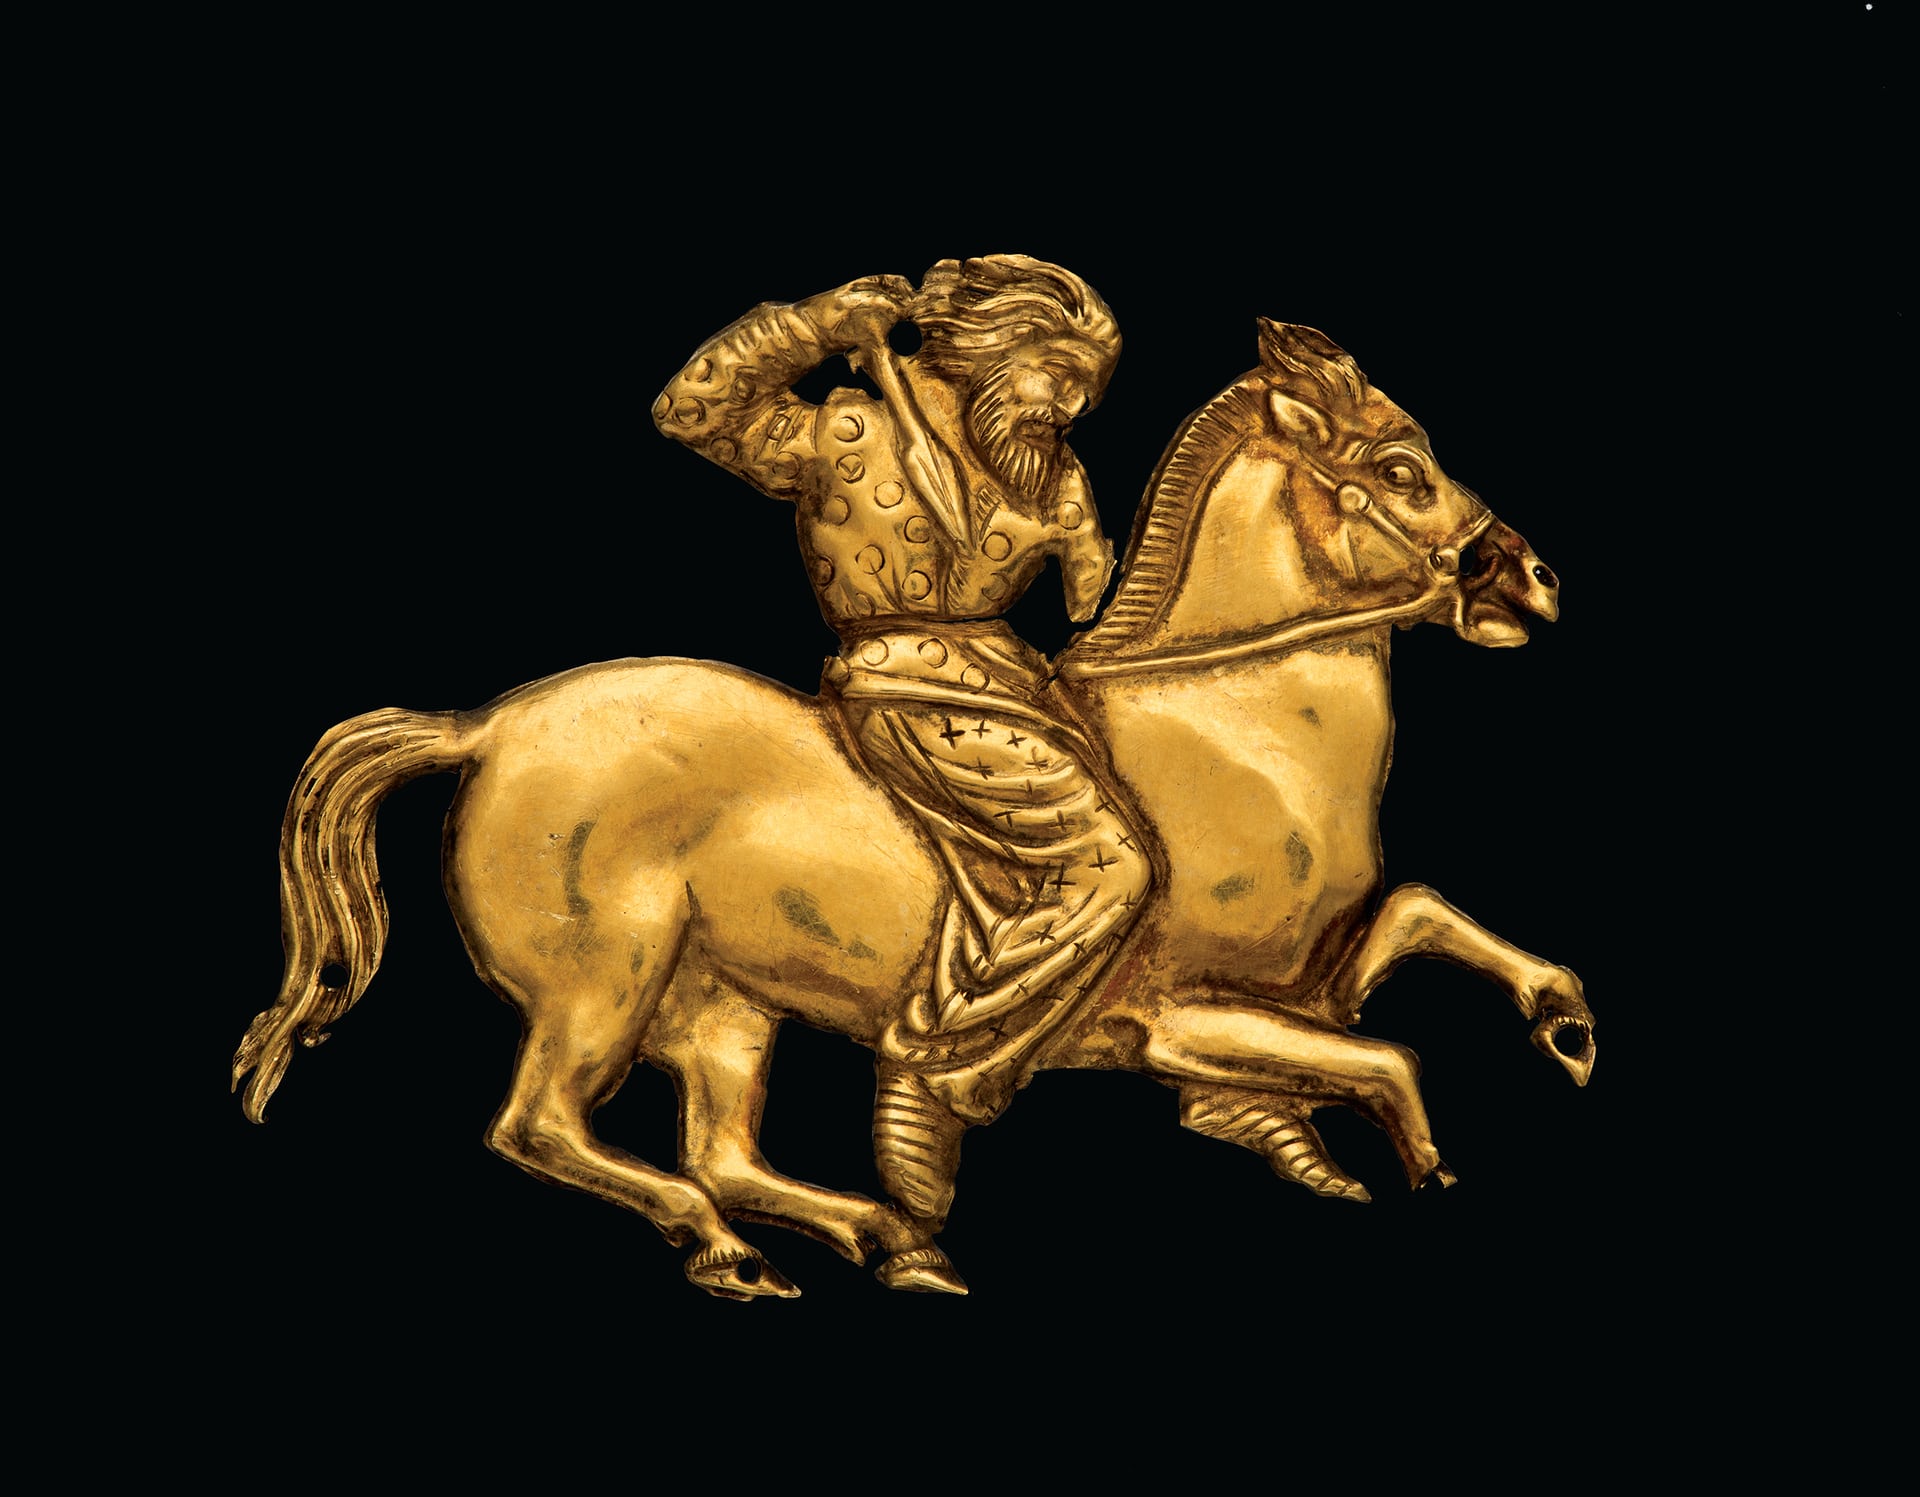 Сақ жауынгері бейнеленген алтын тақта, б.з.д IV ғасырдың II жартысы